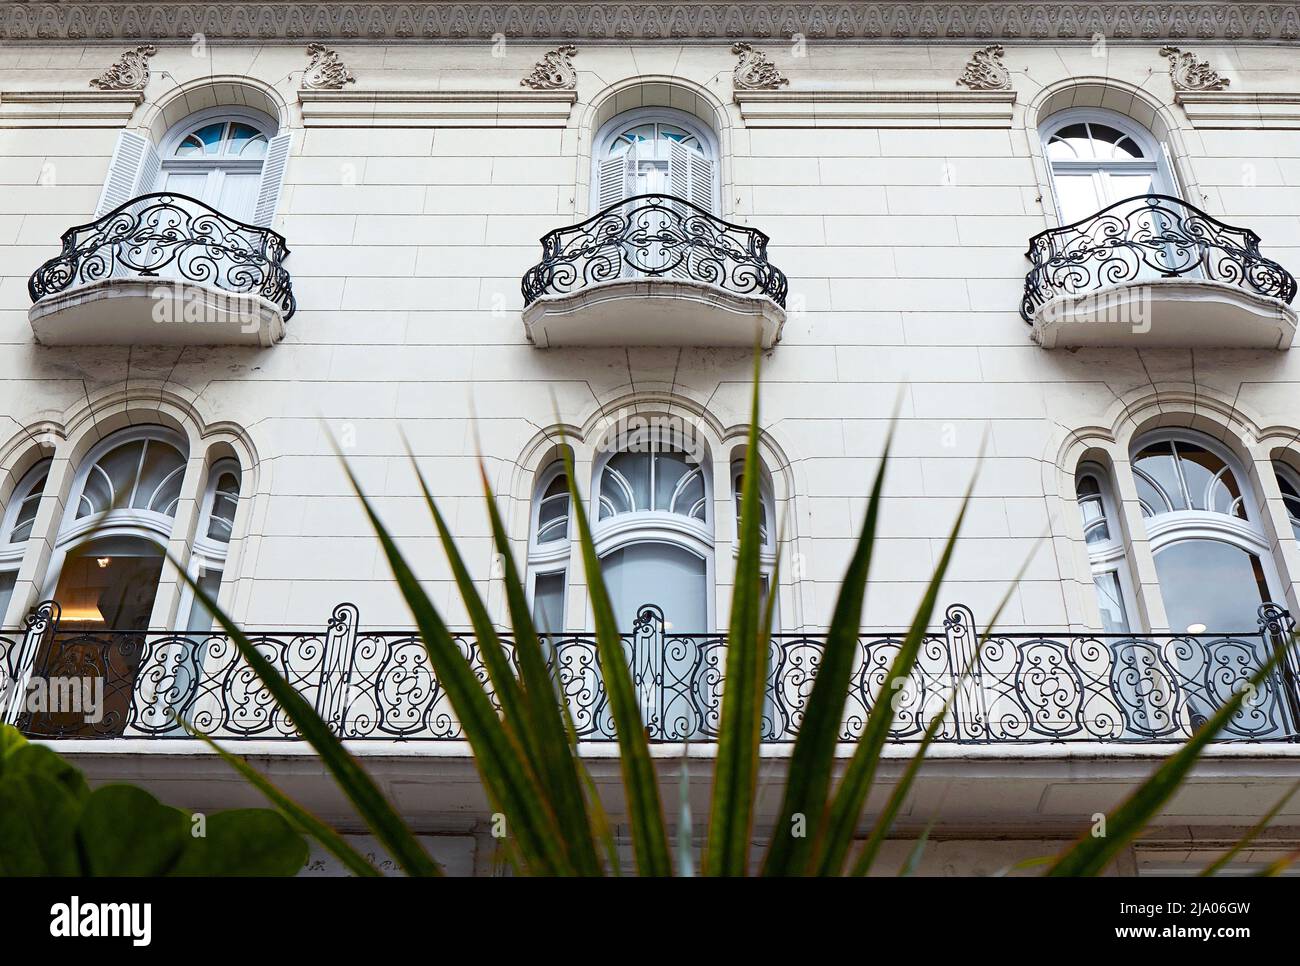 Die Hauptfassade eines Art déco-Gebäudes im französischen Kolonialstil im Viertel Recoleta, Buenos Aires, Argentinien. Stockfoto